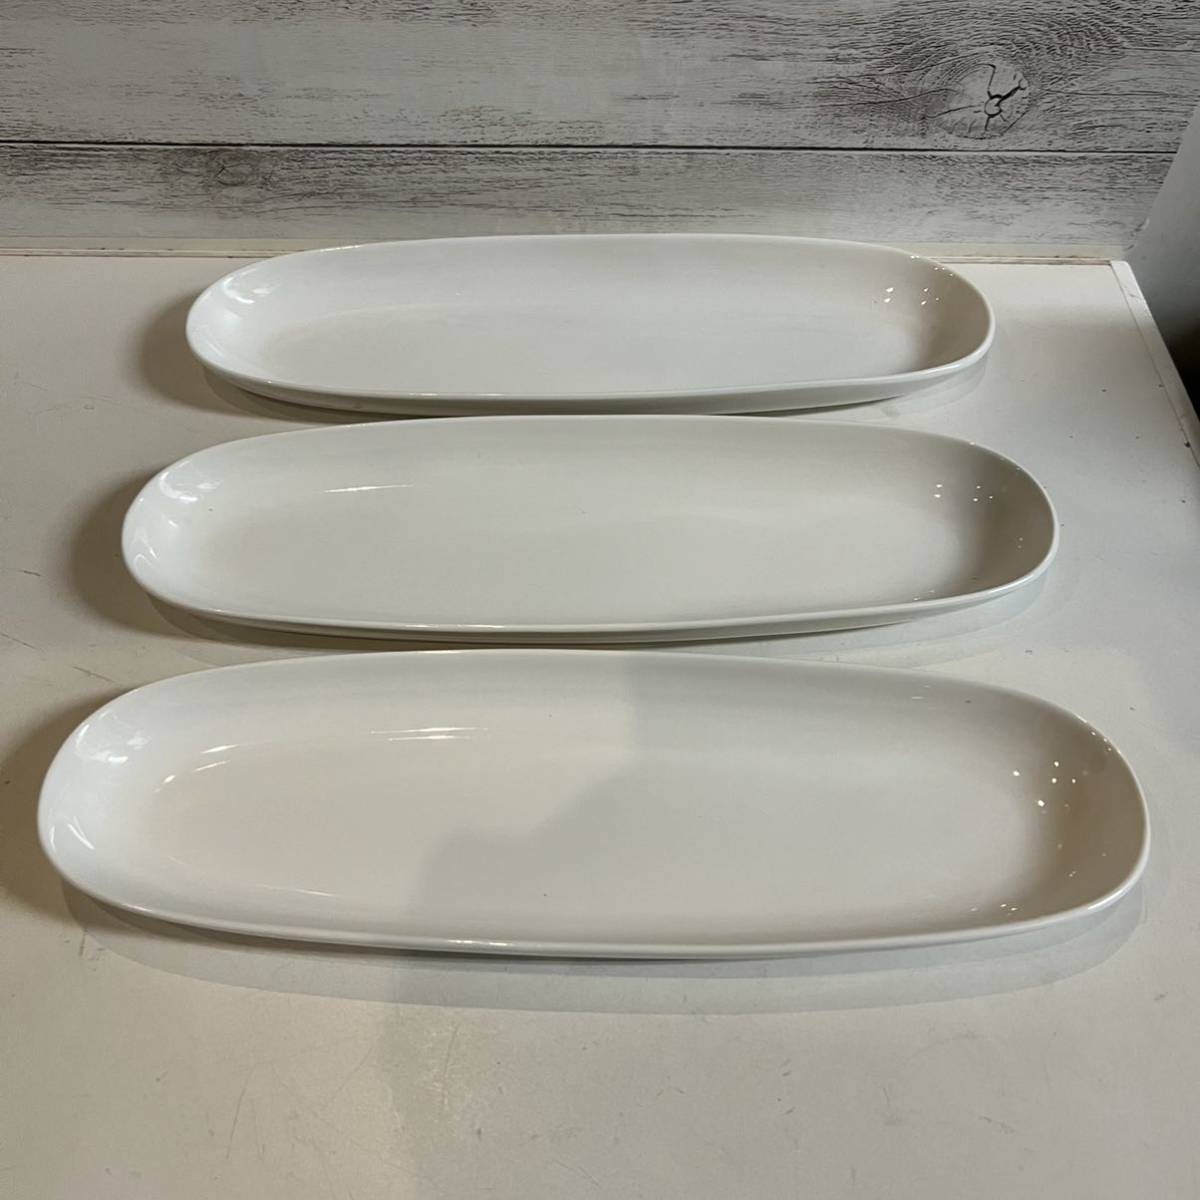 細長プレート 細楕円型プレート 3枚 ホワイトプレート オードブル皿 白い食器 洋食器の画像1